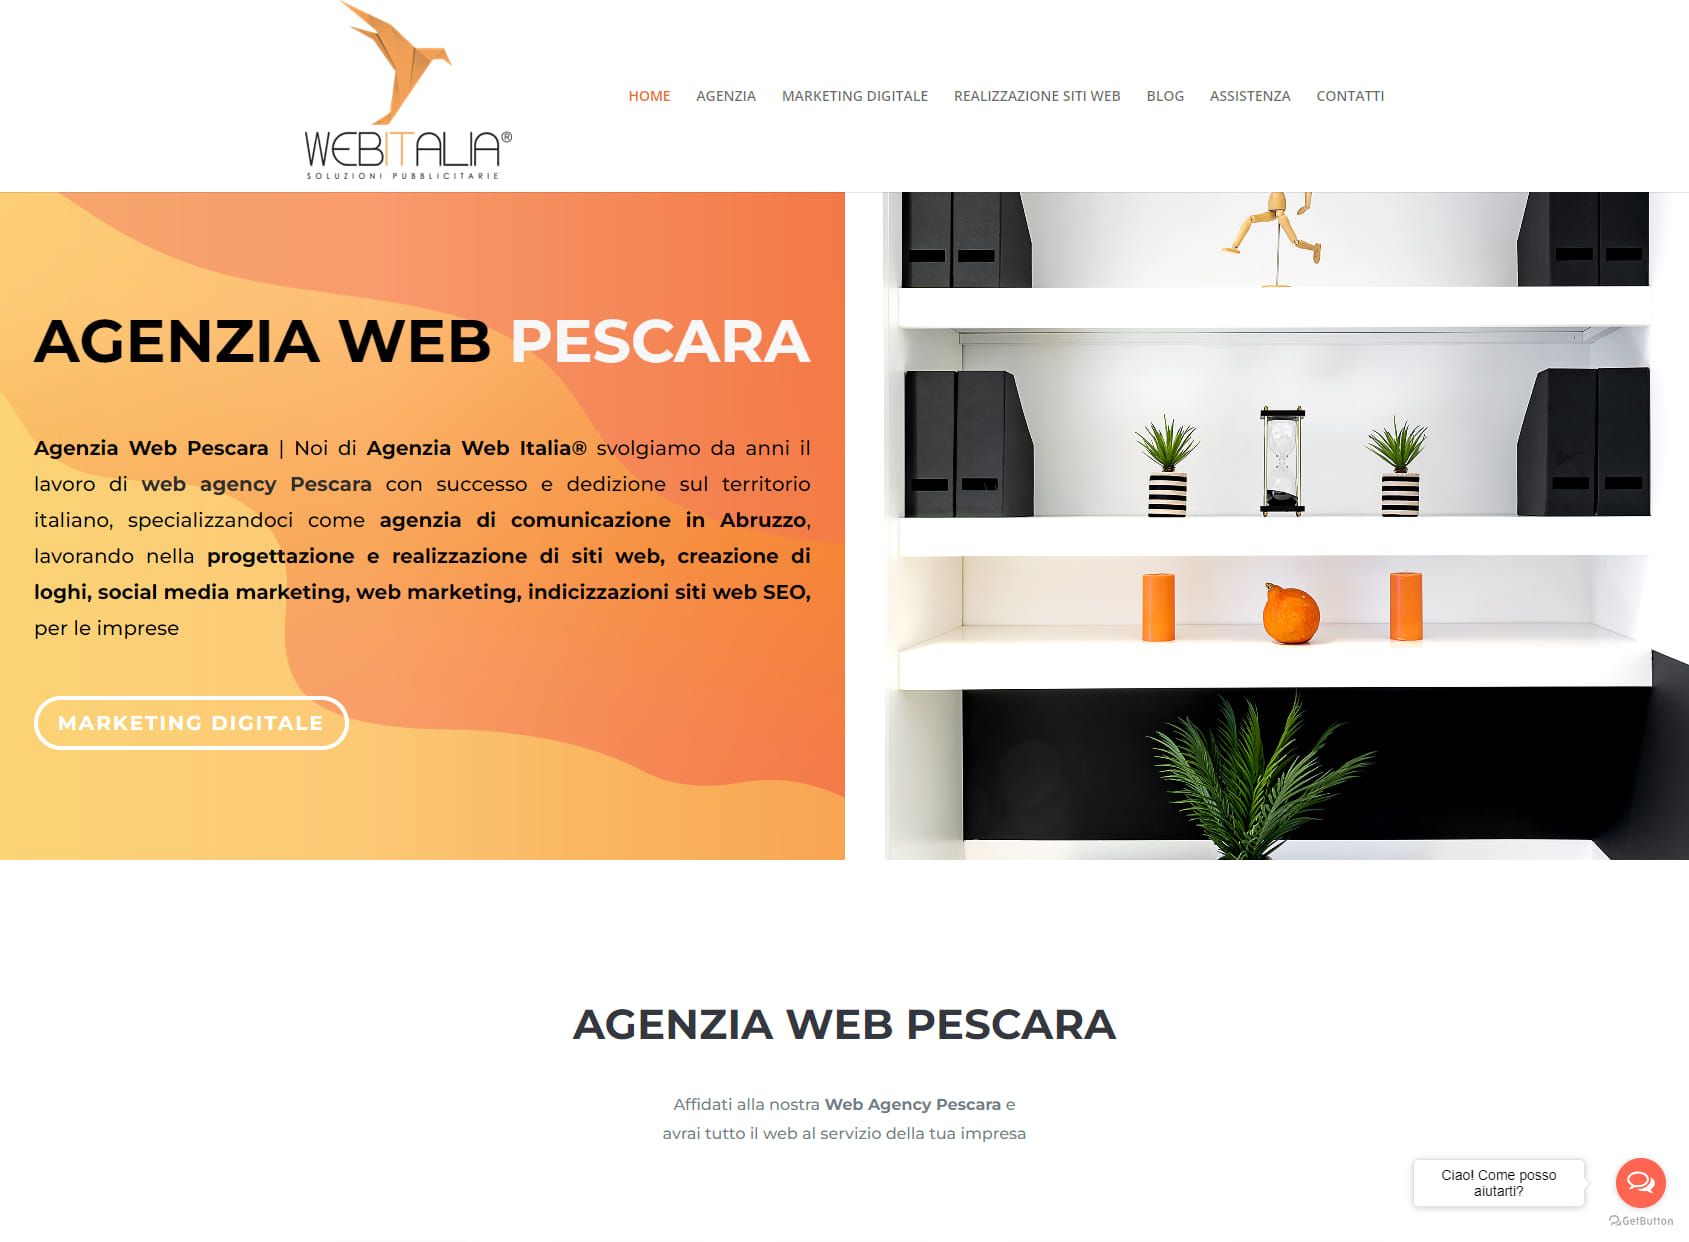 Web Italia - Web Agency Pescara, Realizzazione siti web